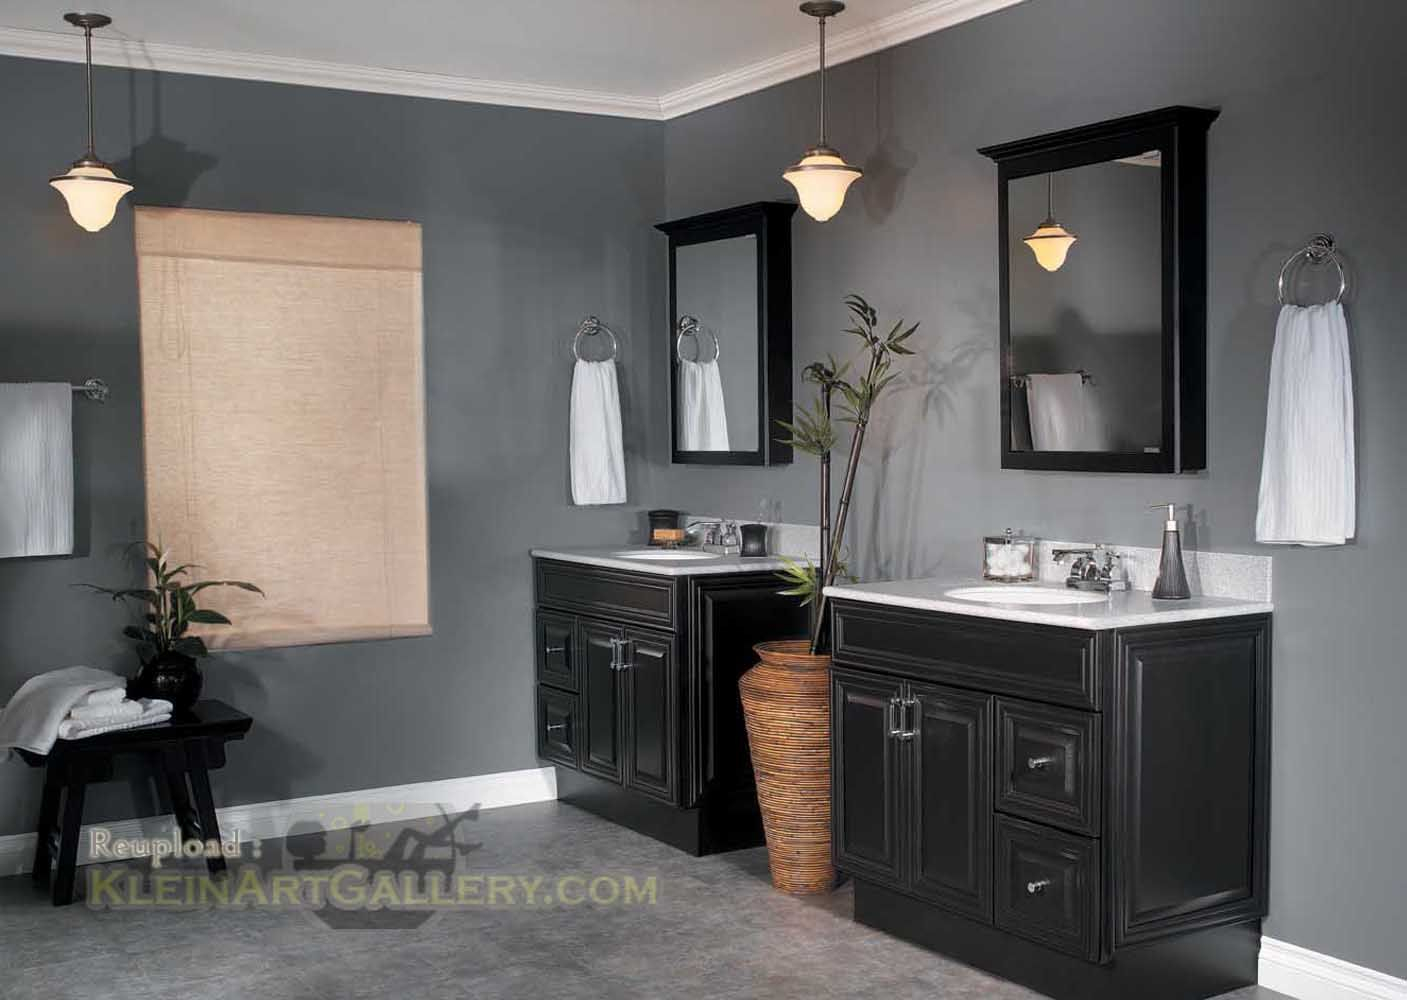 Bathroom Color Ideas With Dark Cabinets Bathroom In 2019 Black regarding sizing 1407 X 1000